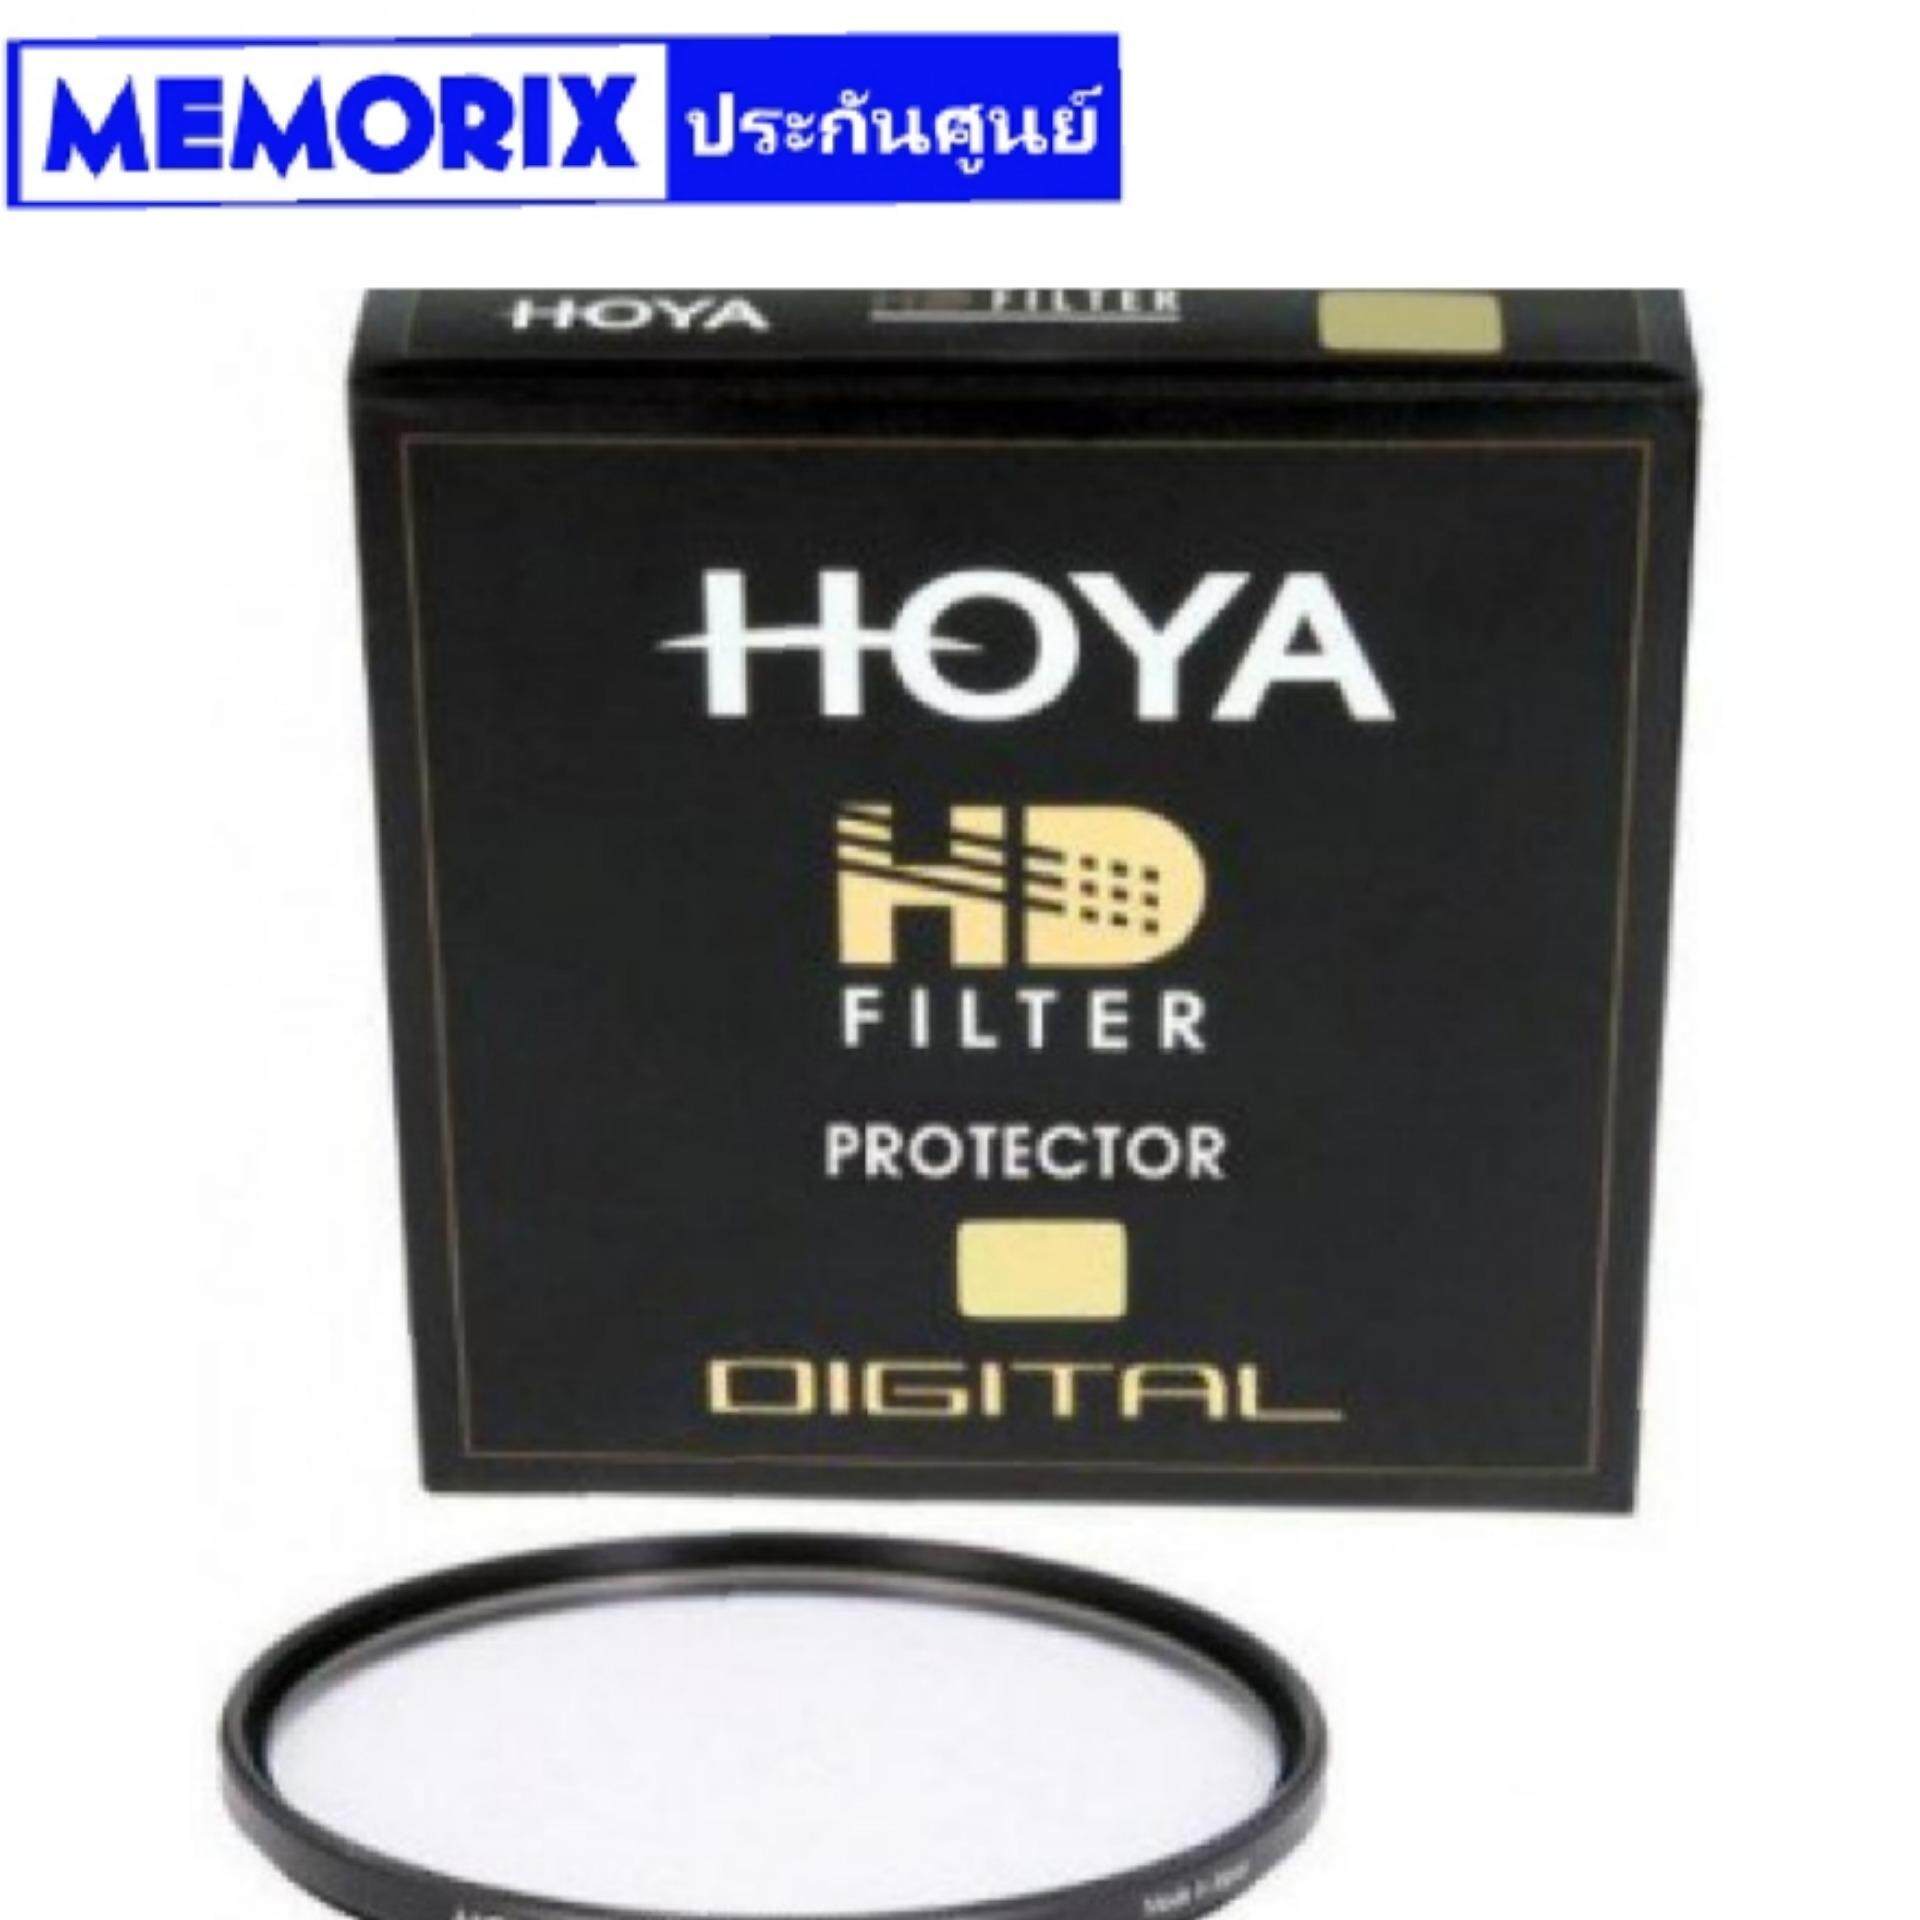 Hoya HD Protector 55mm